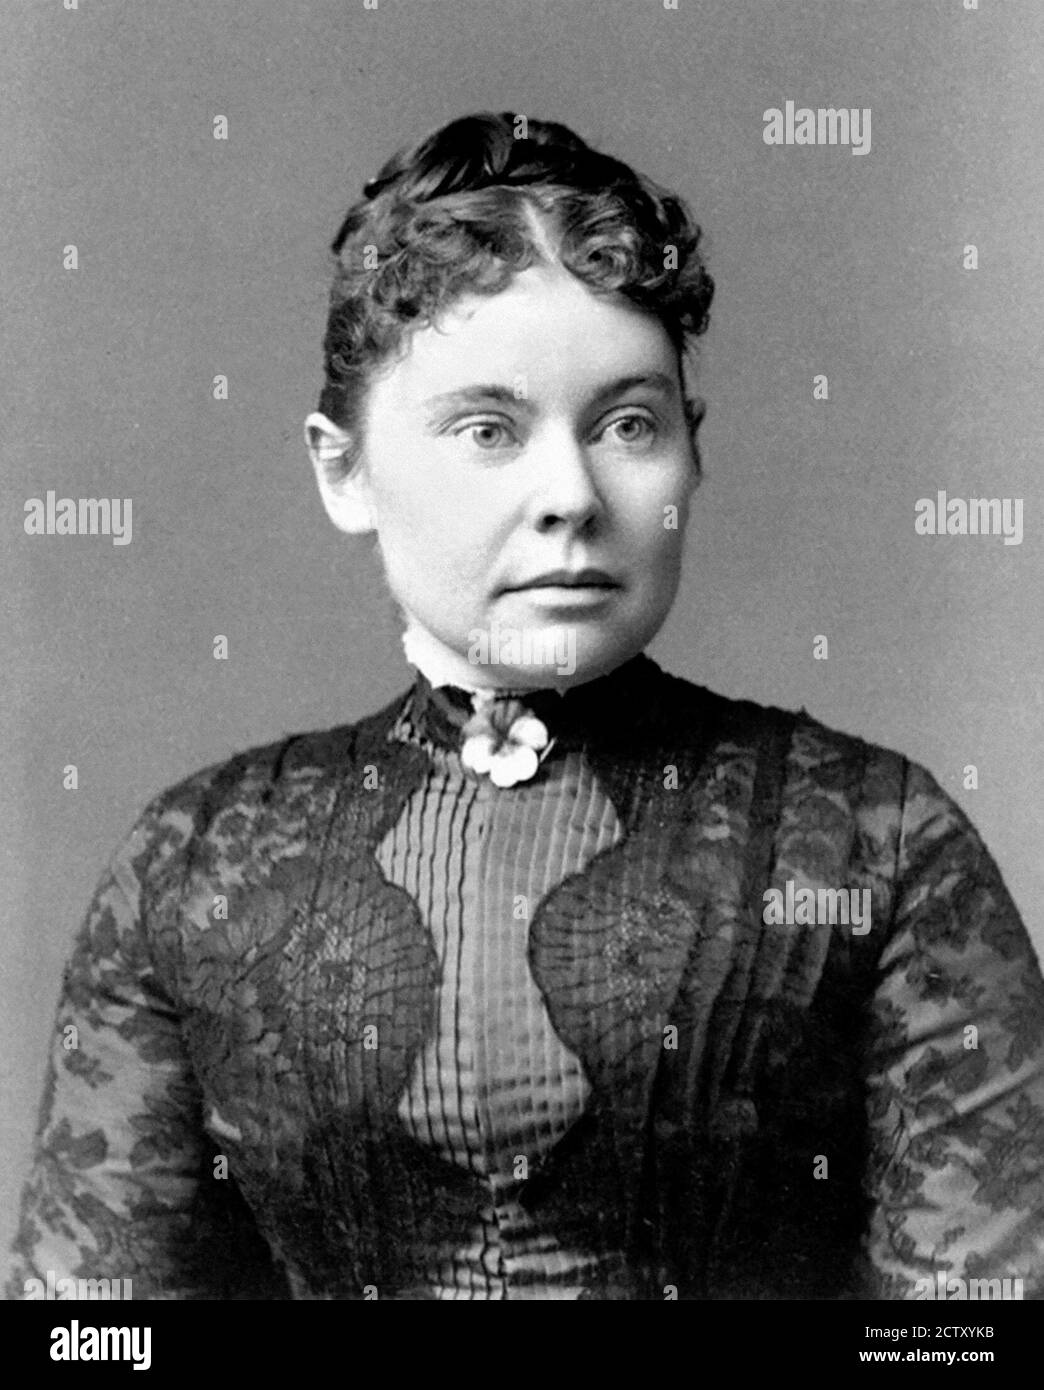 Lizzie Borden. Ritratto di Lizzie Andrew Borden (1860-1927), circa 1890. Borden fu accusato e assolto dell'omicidio di sua madre e padre. Foto Stock